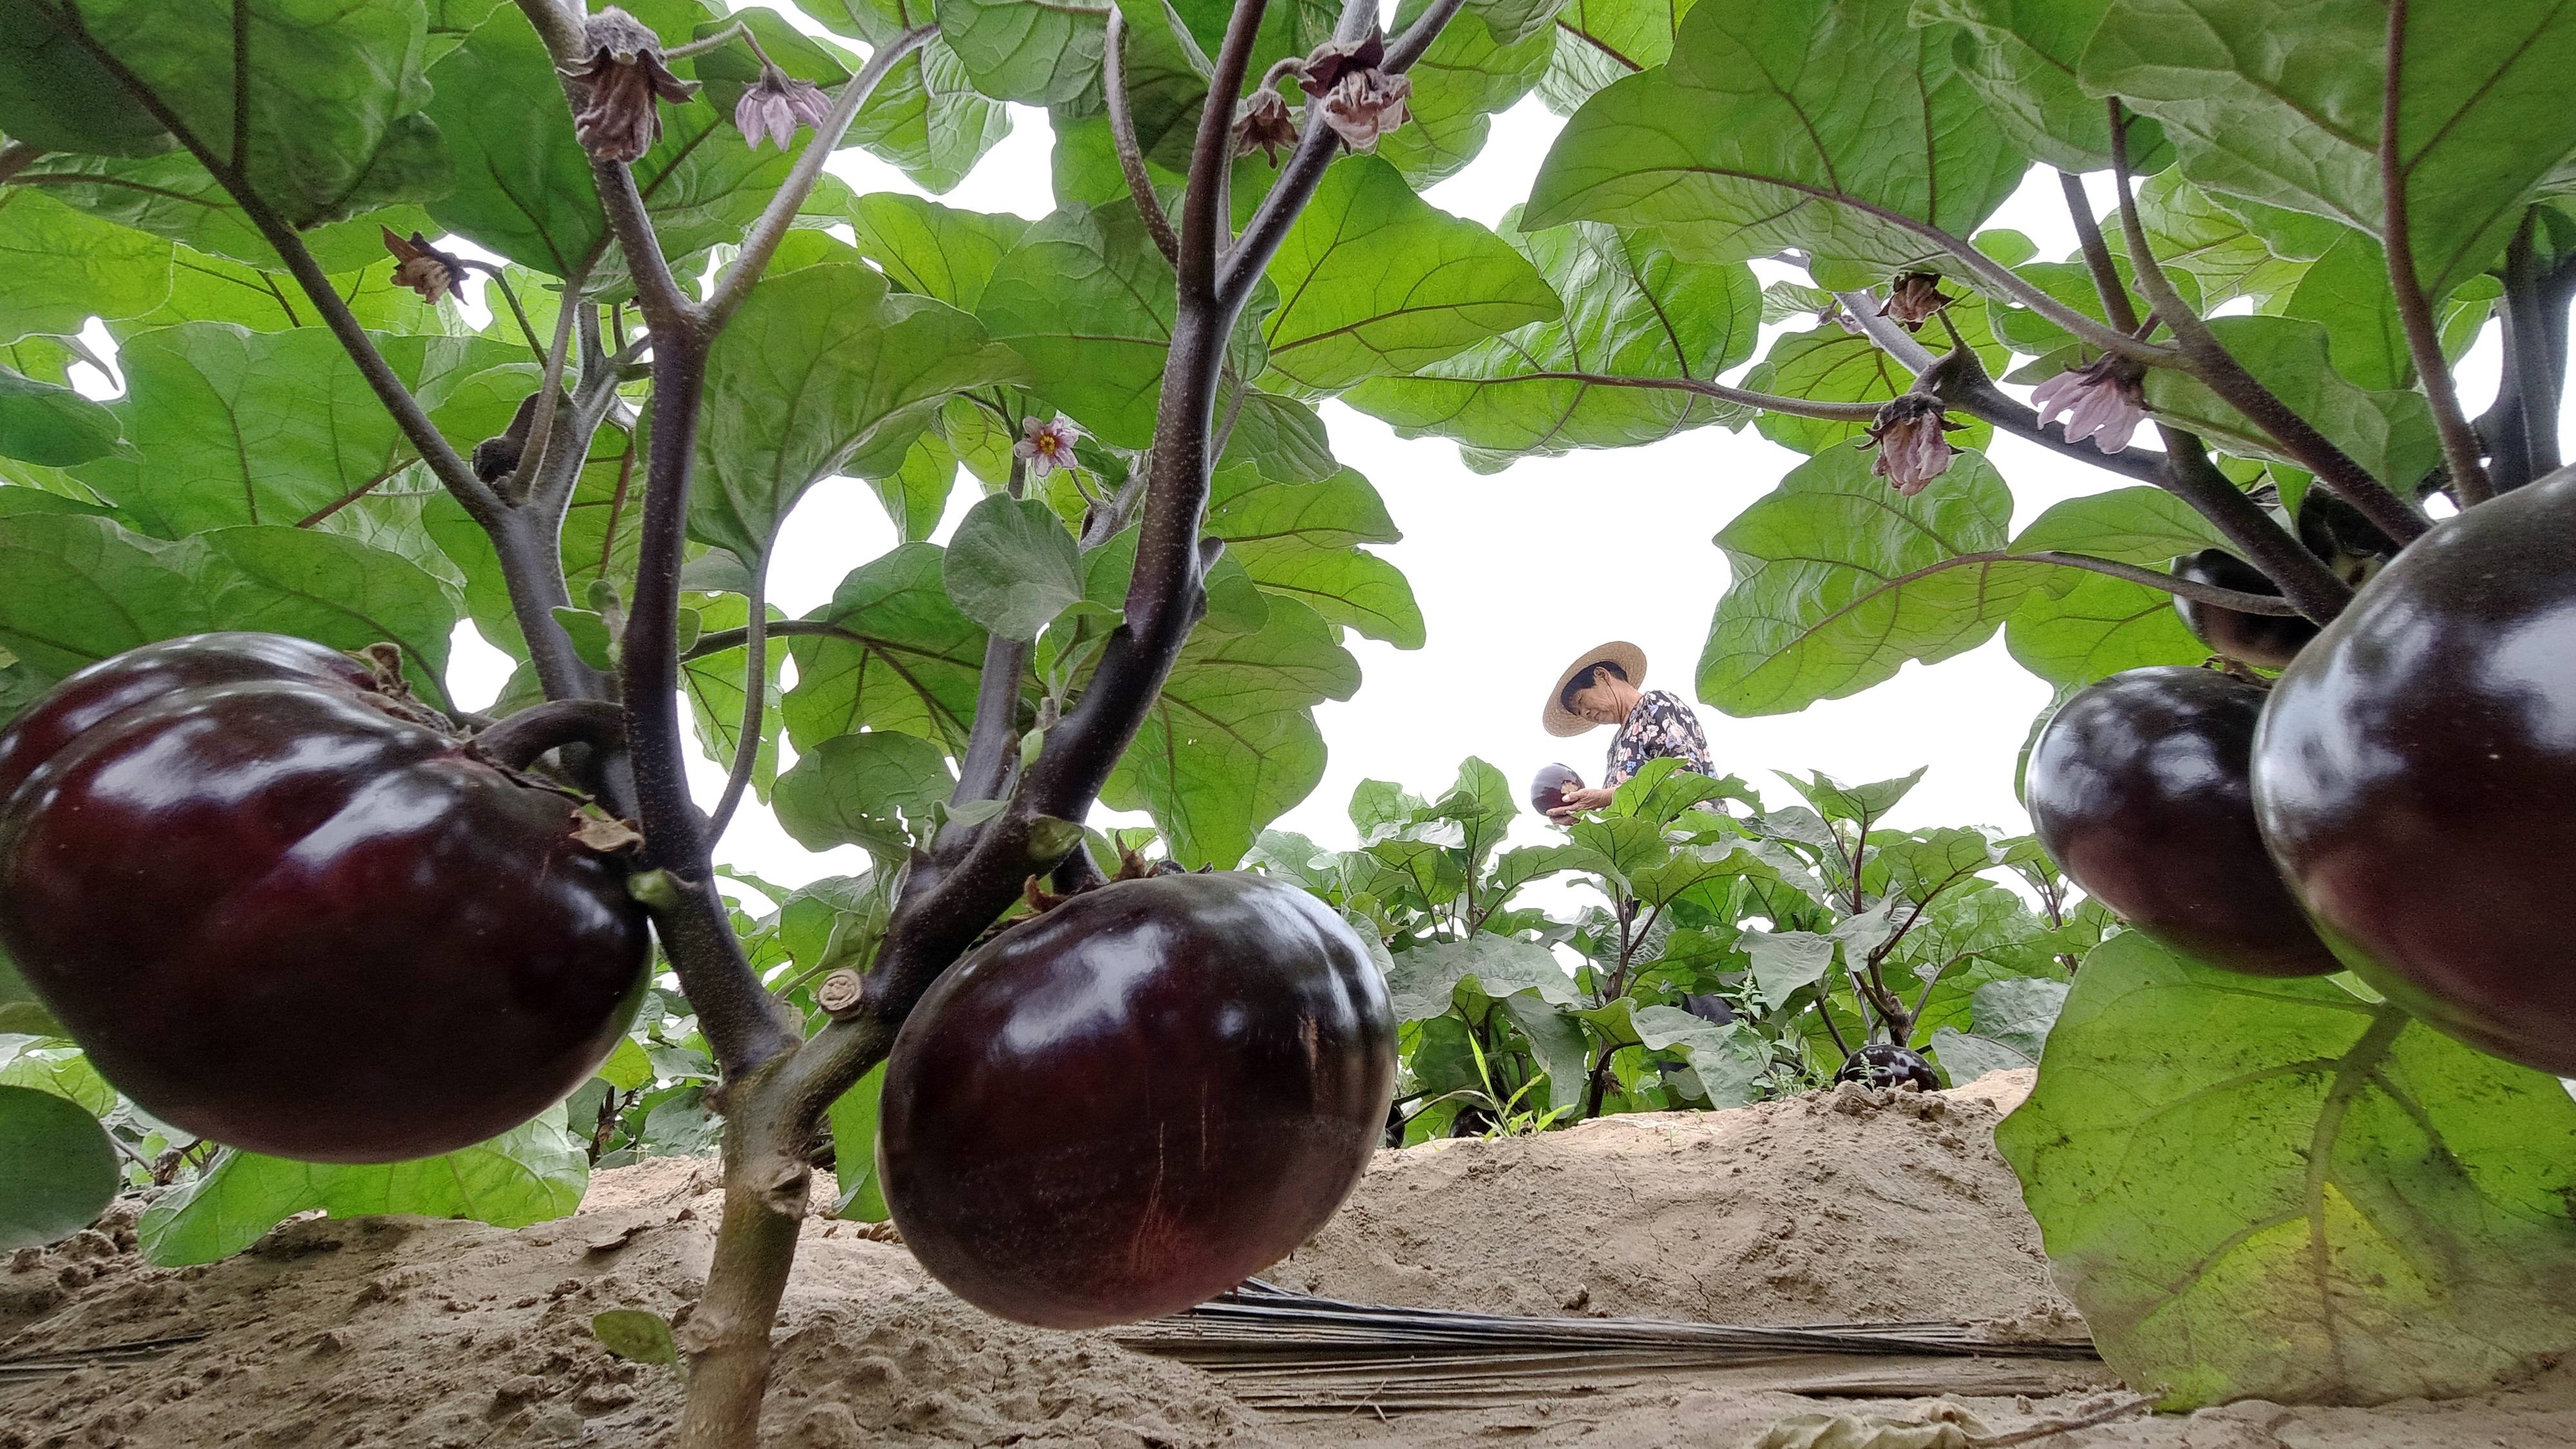 6月21日,滦州市小马庄镇大马庄村的菜农在收获茄子